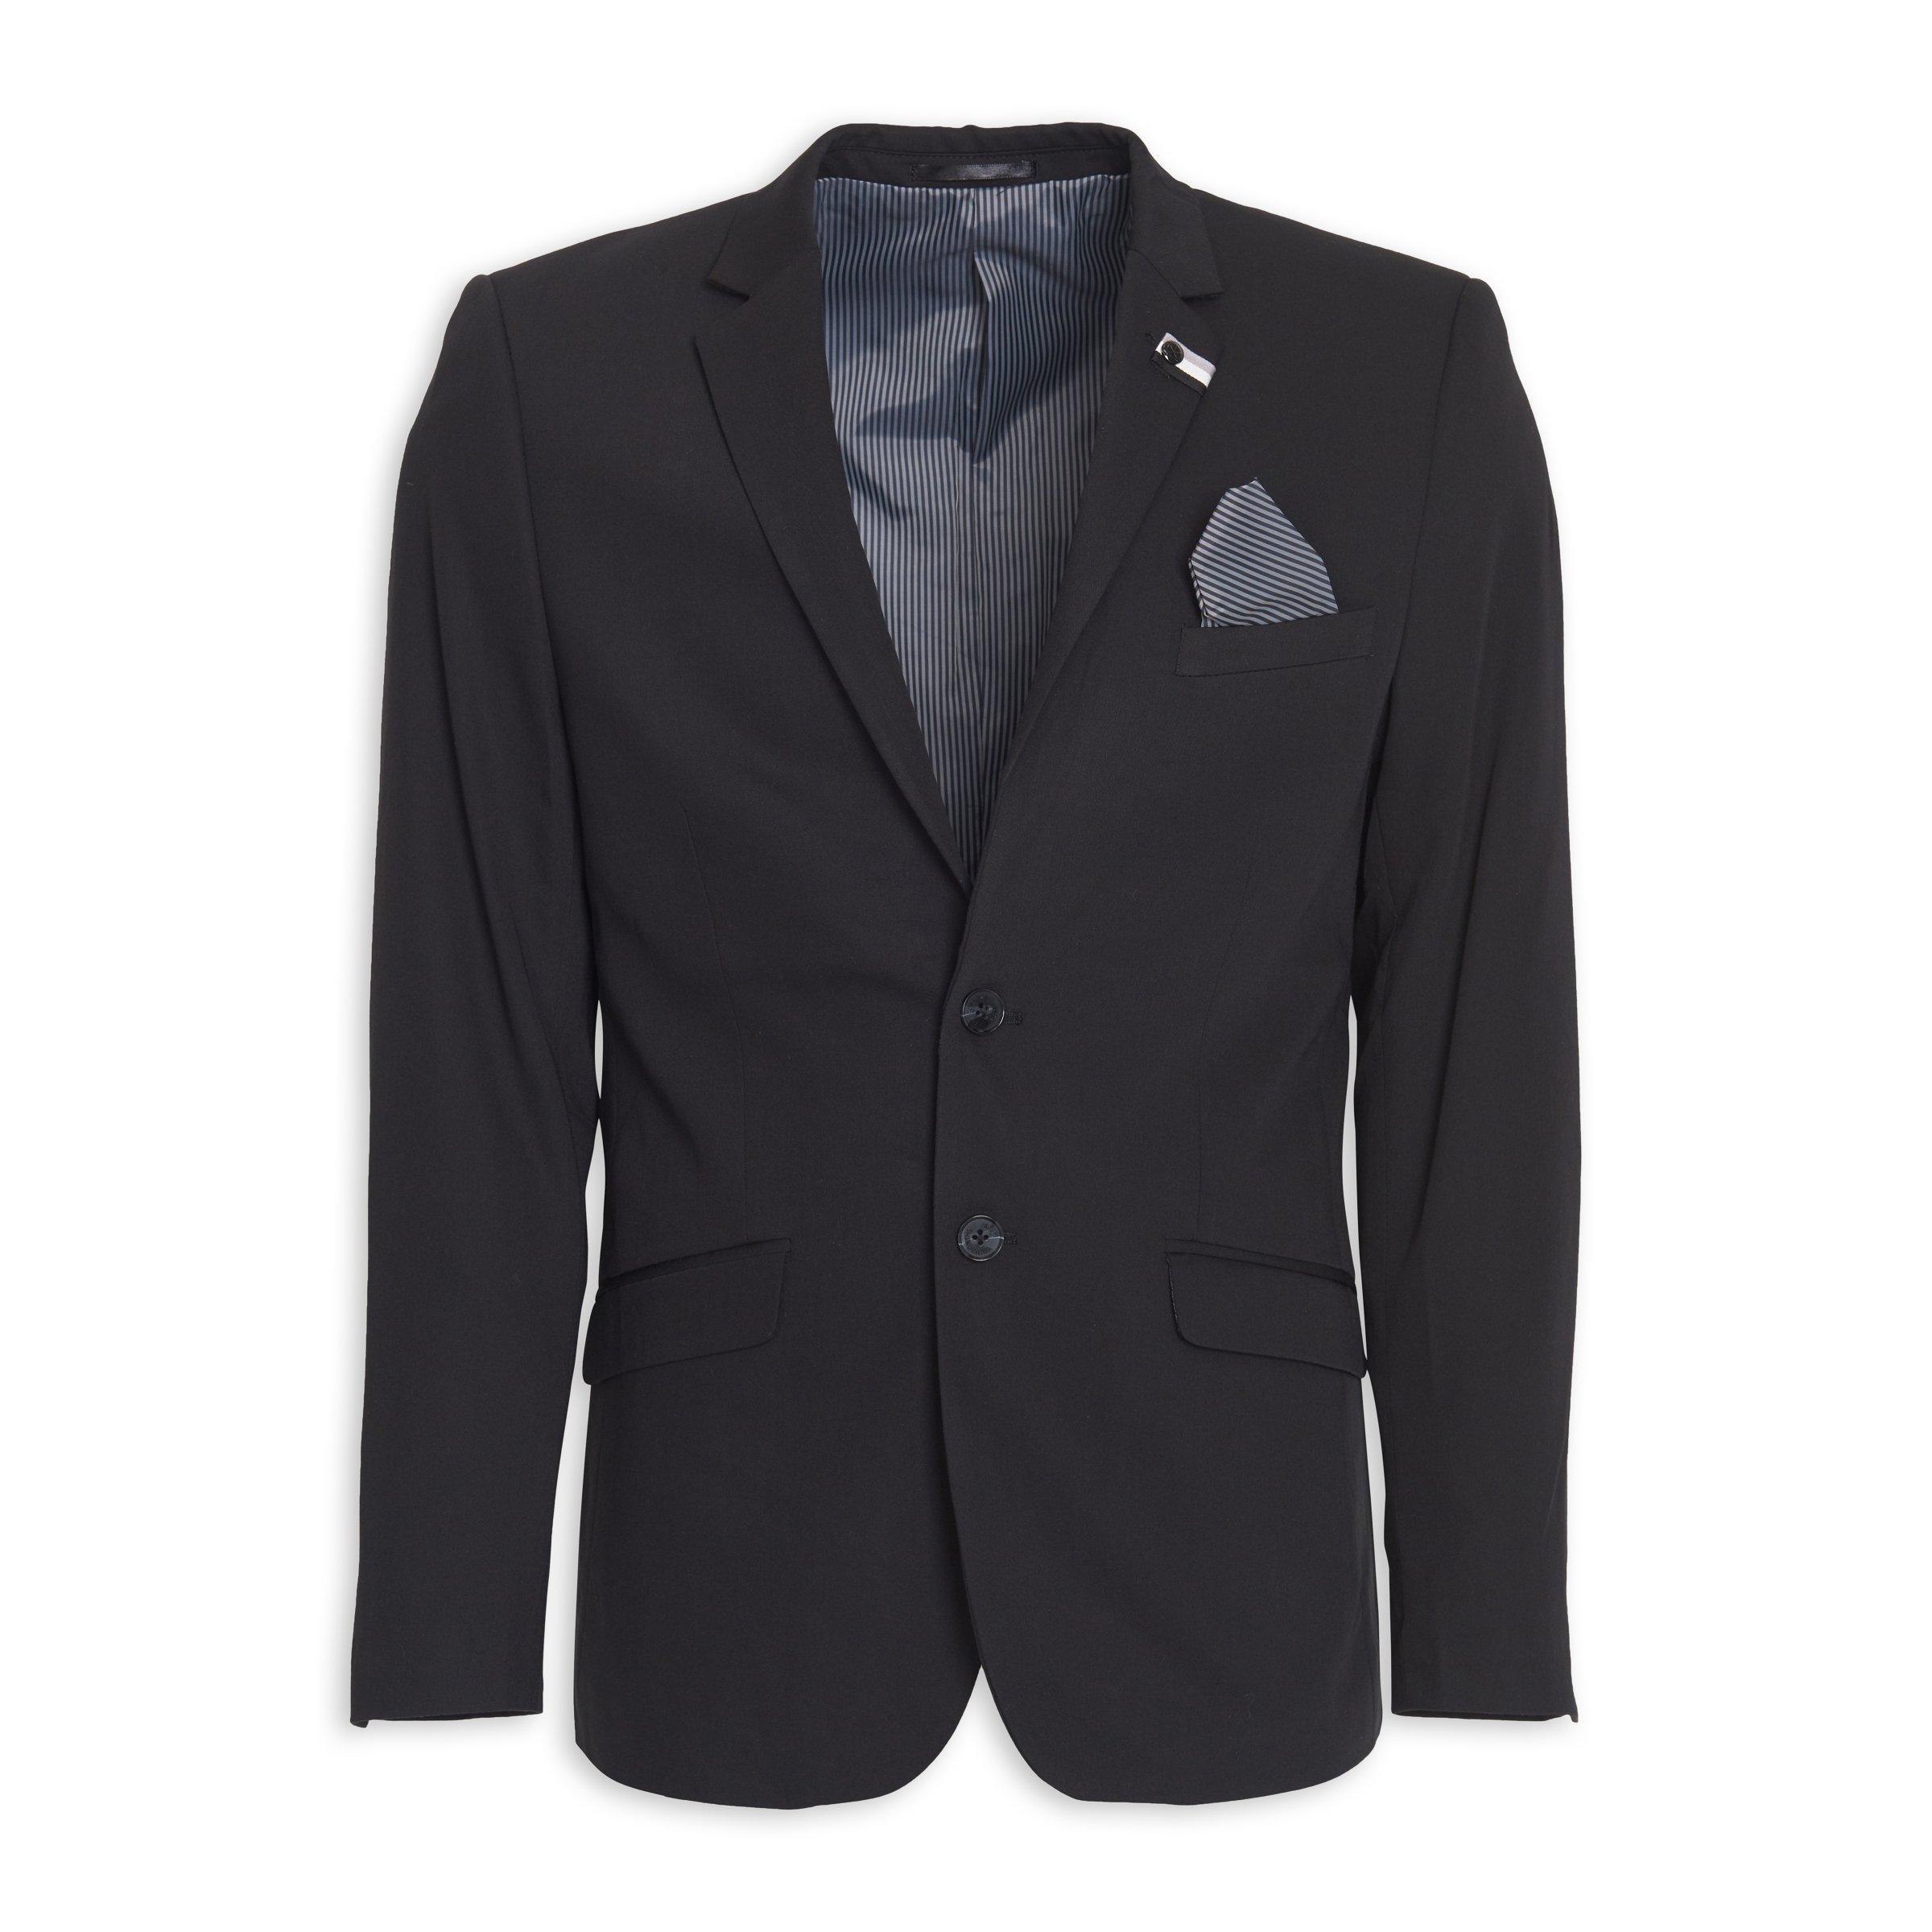 Buy Truworths Man Black 2 Button Blazer Online | Truworths